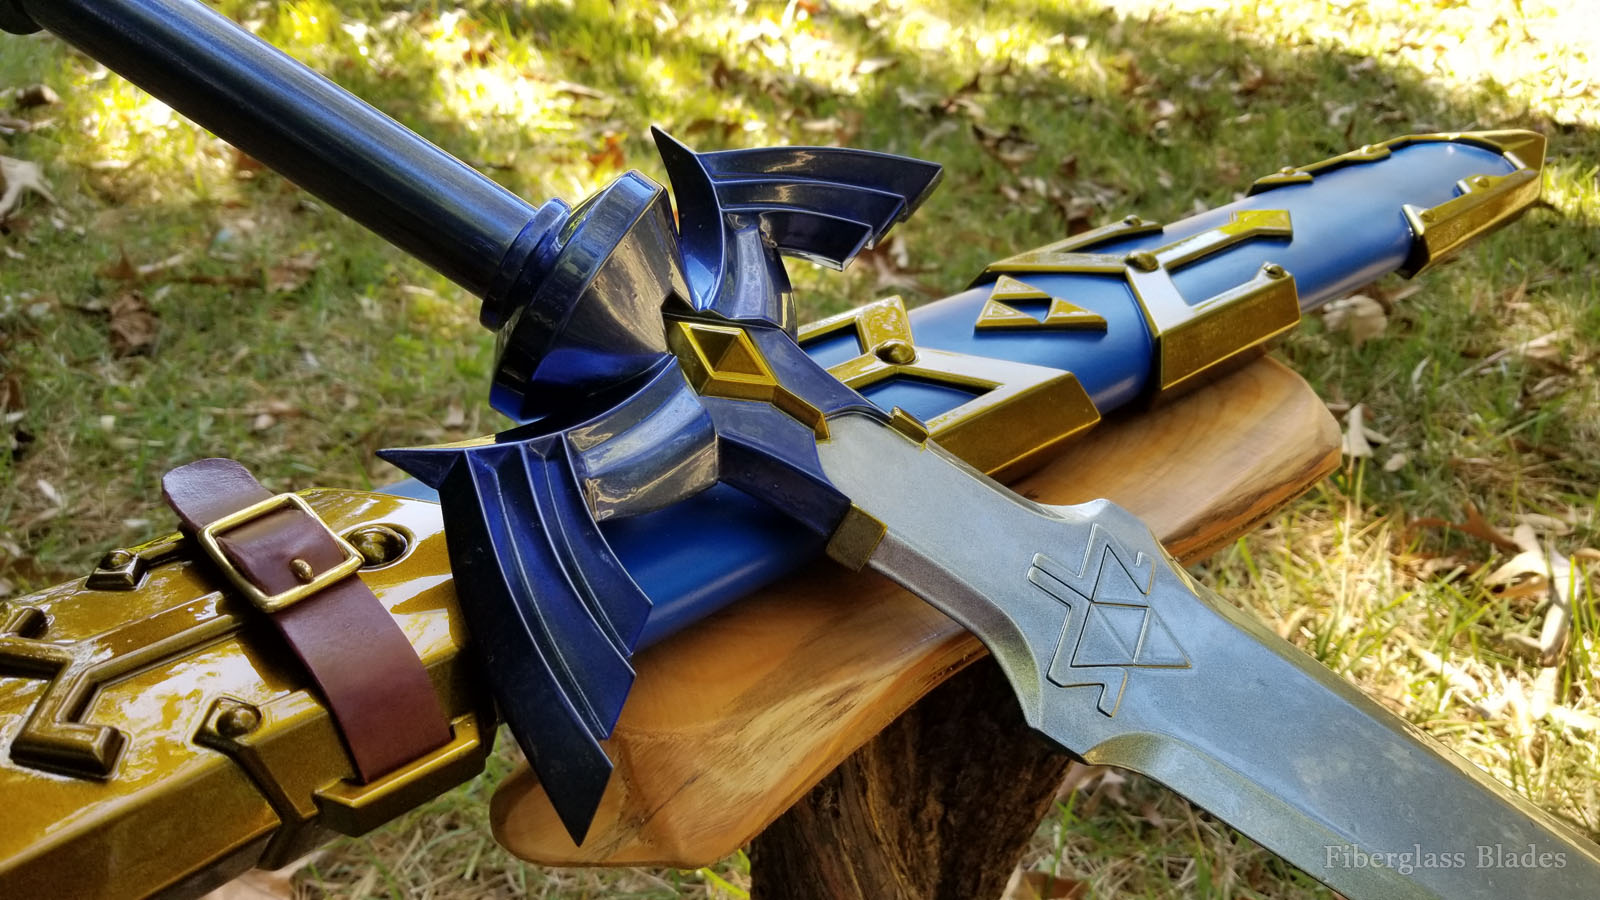 Legend of Zelda Skyward Sword - Breath of the Wild Master Sword cosplay replica prop